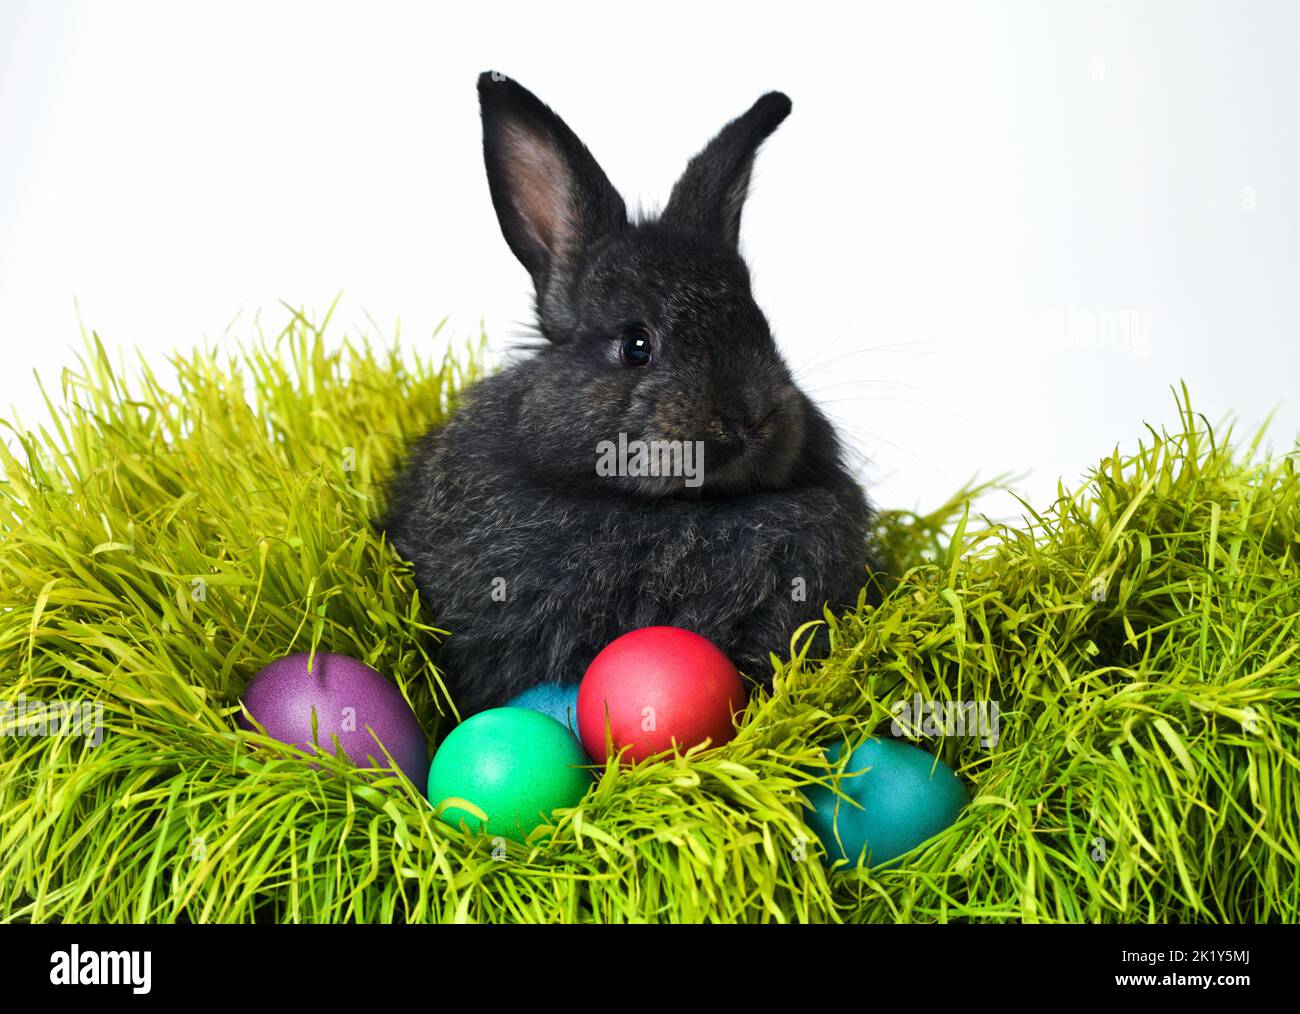 Nous étions tous de la famille ici. Photo en studio d'un joli lapin sur l'herbe avec un assortiment d'œufs aux couleurs vives. Banque D'Images